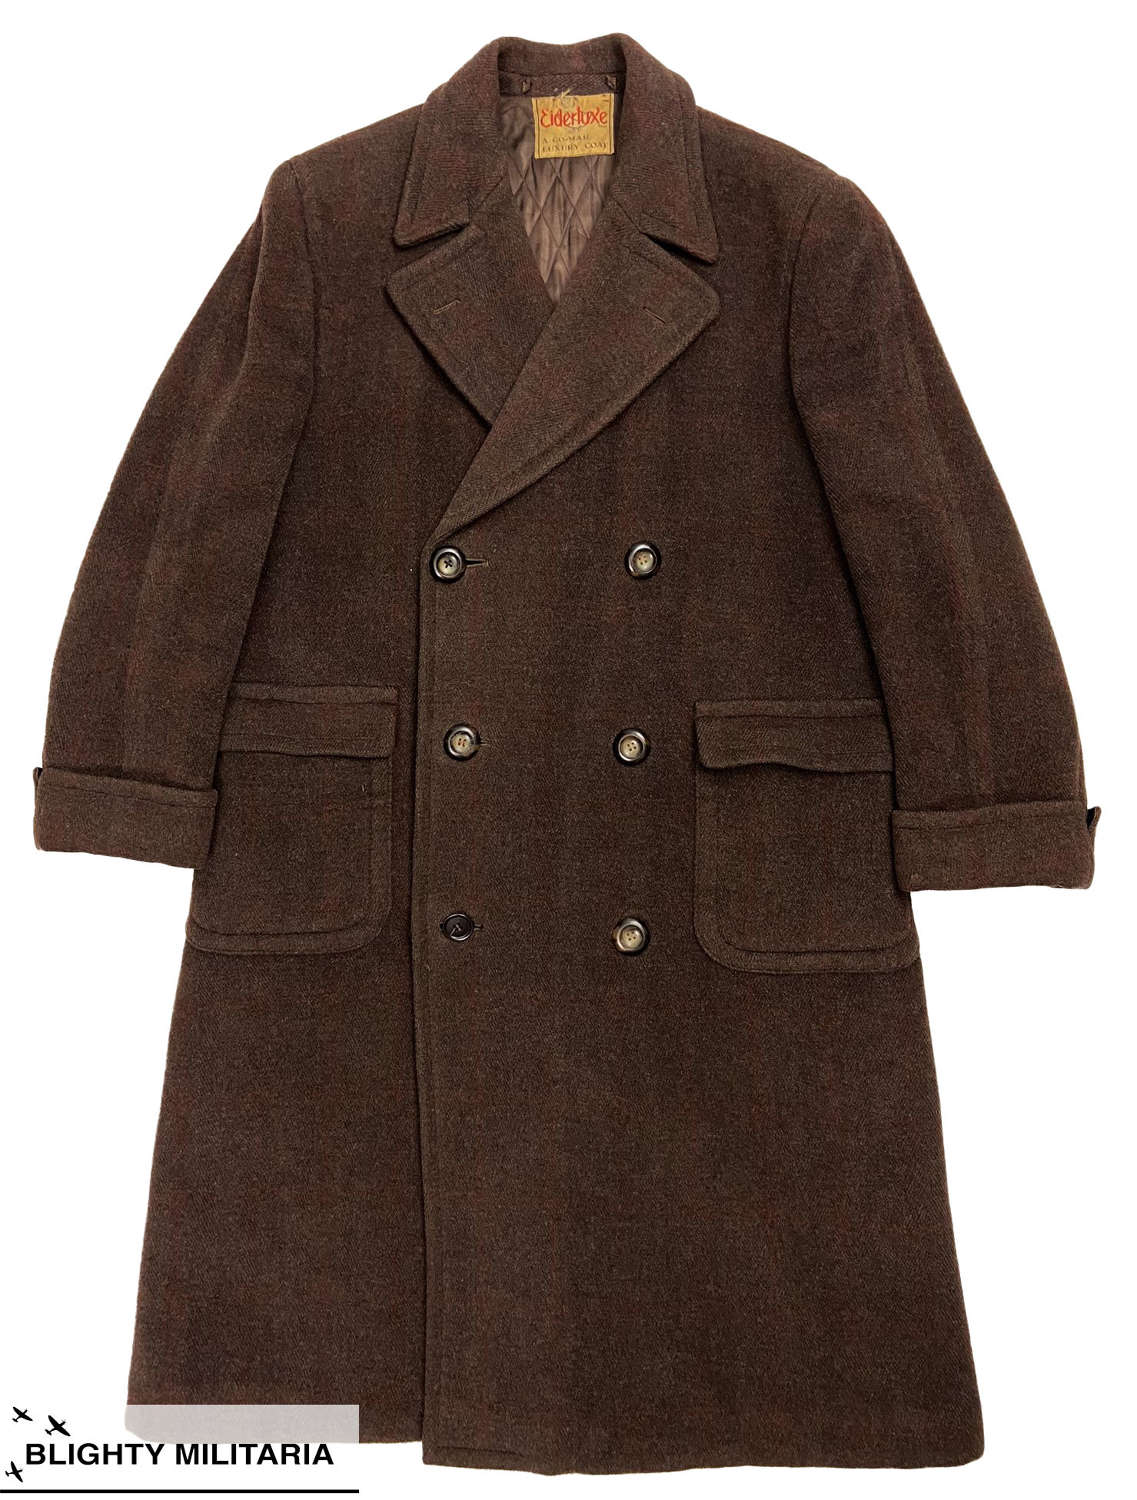 Original 1940s Men's Overcoat by 'Eiderlixe'